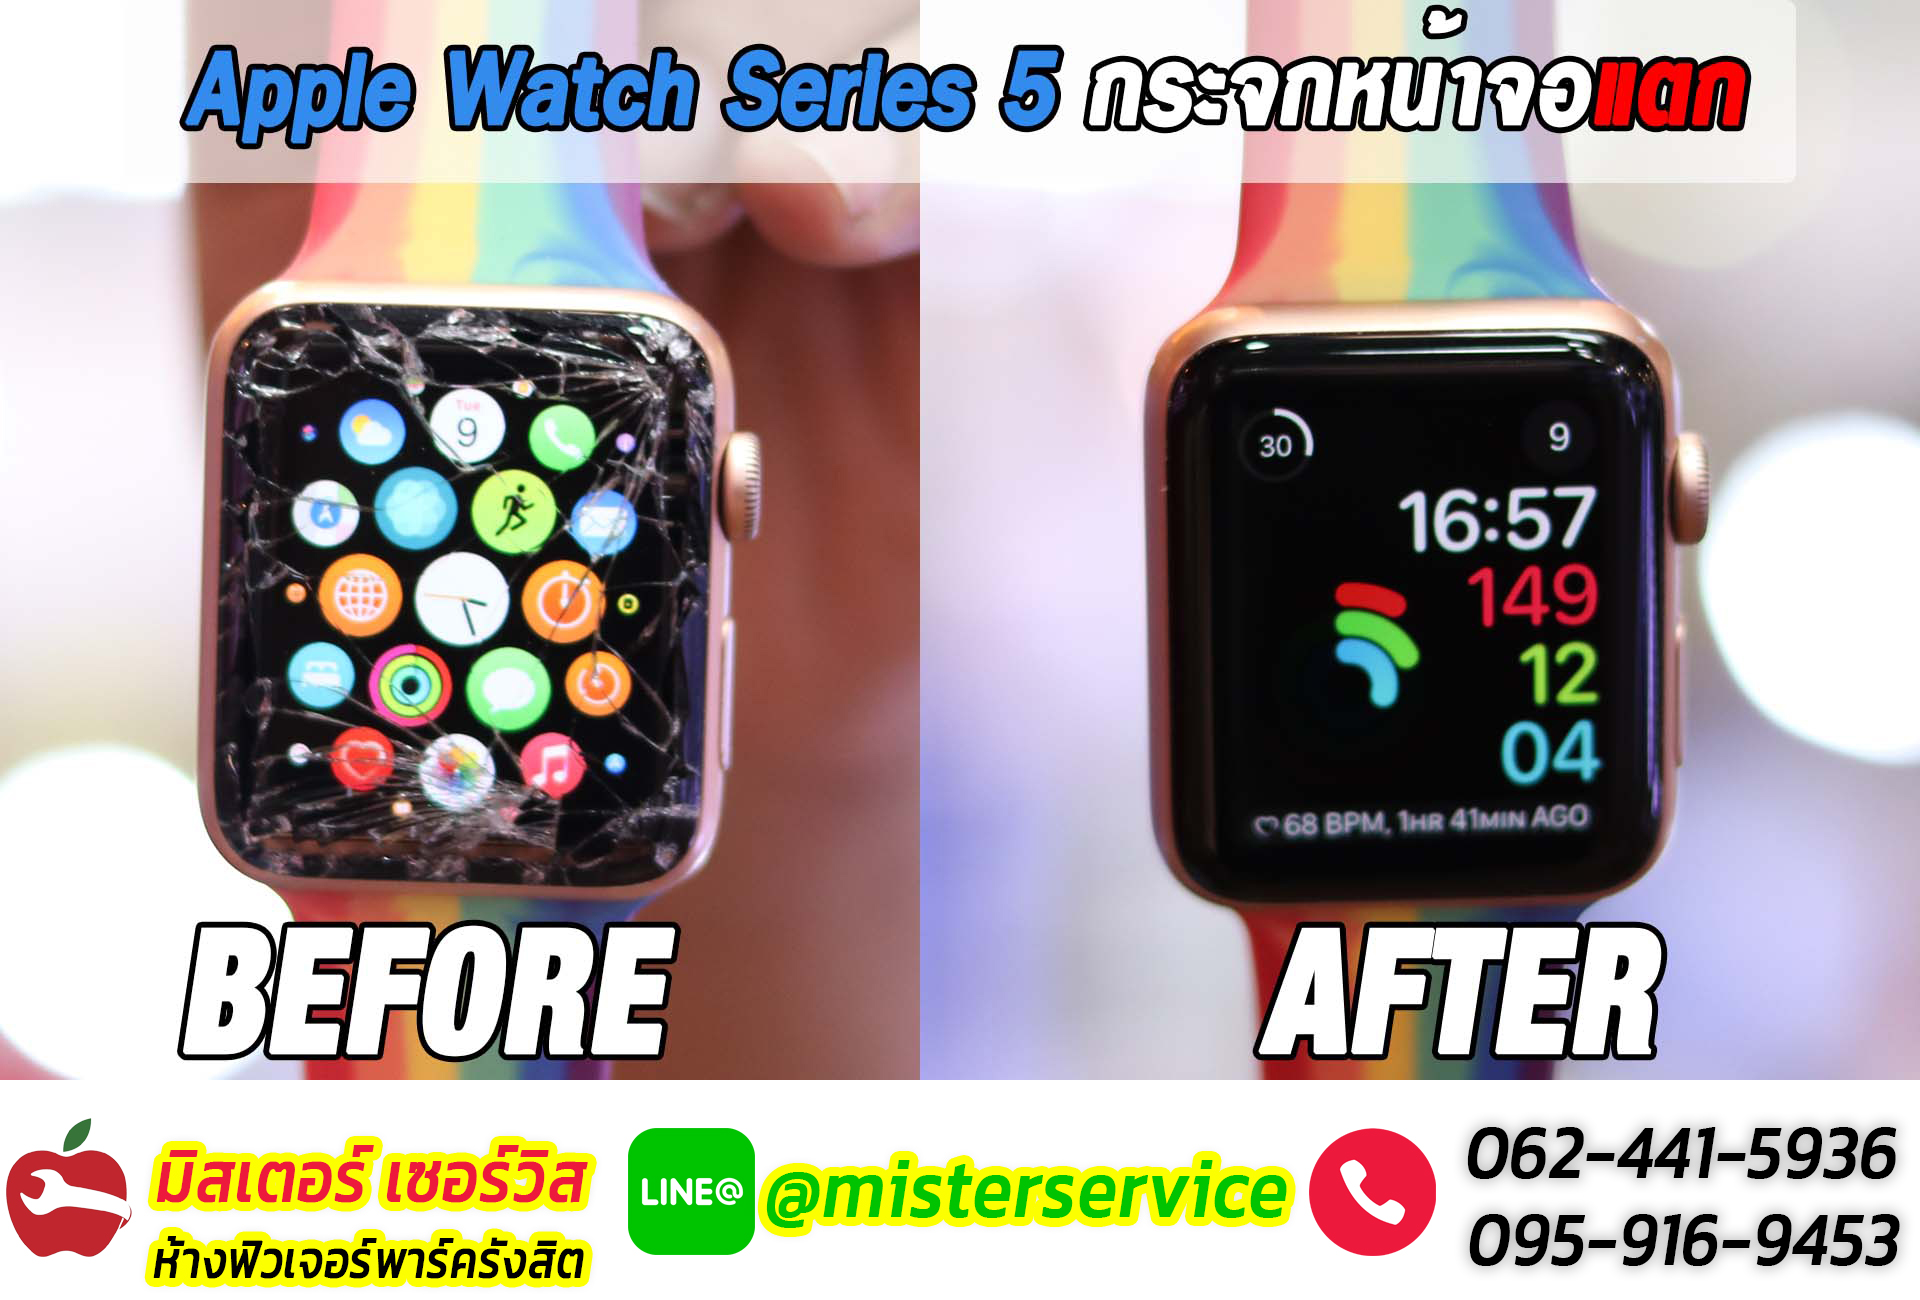 ซ่อม Apple Watch จังหวัดศรีสะเกษ